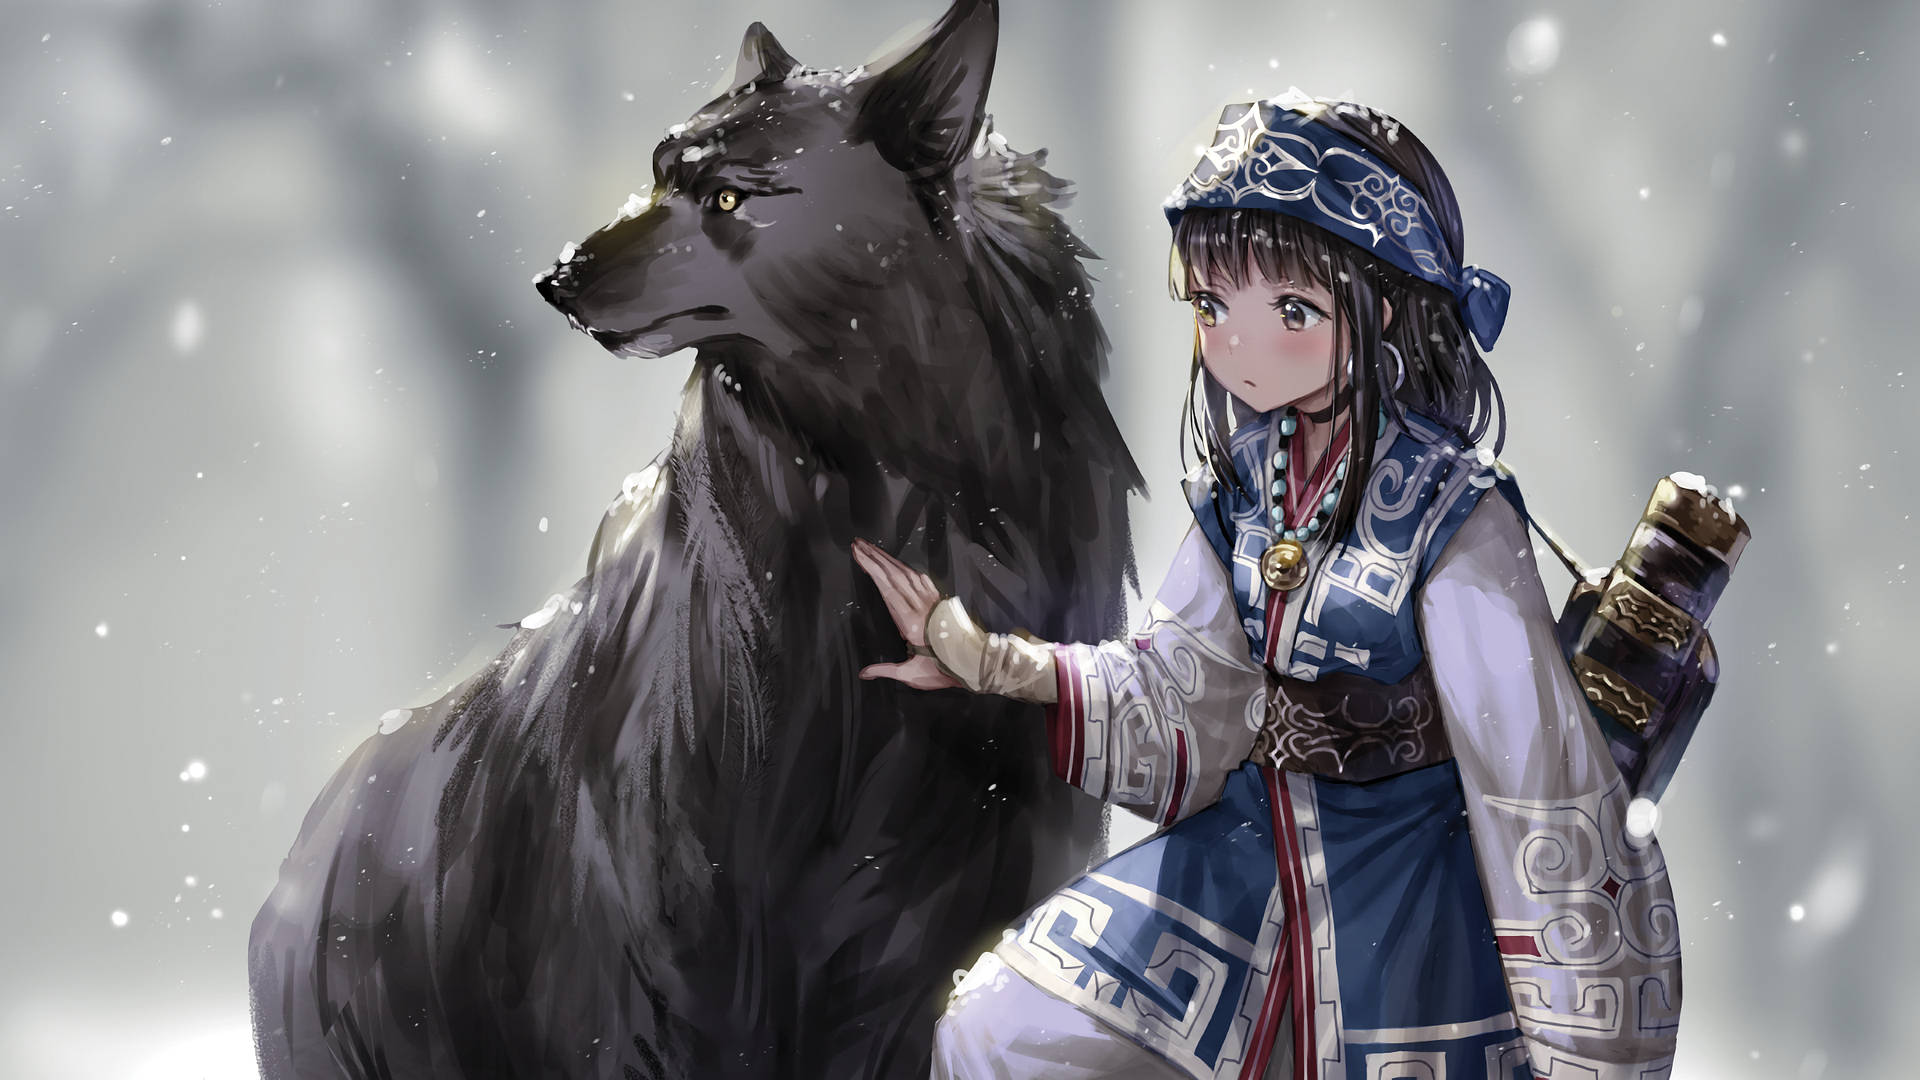 Tamaskan Anime Dog With Girl Background